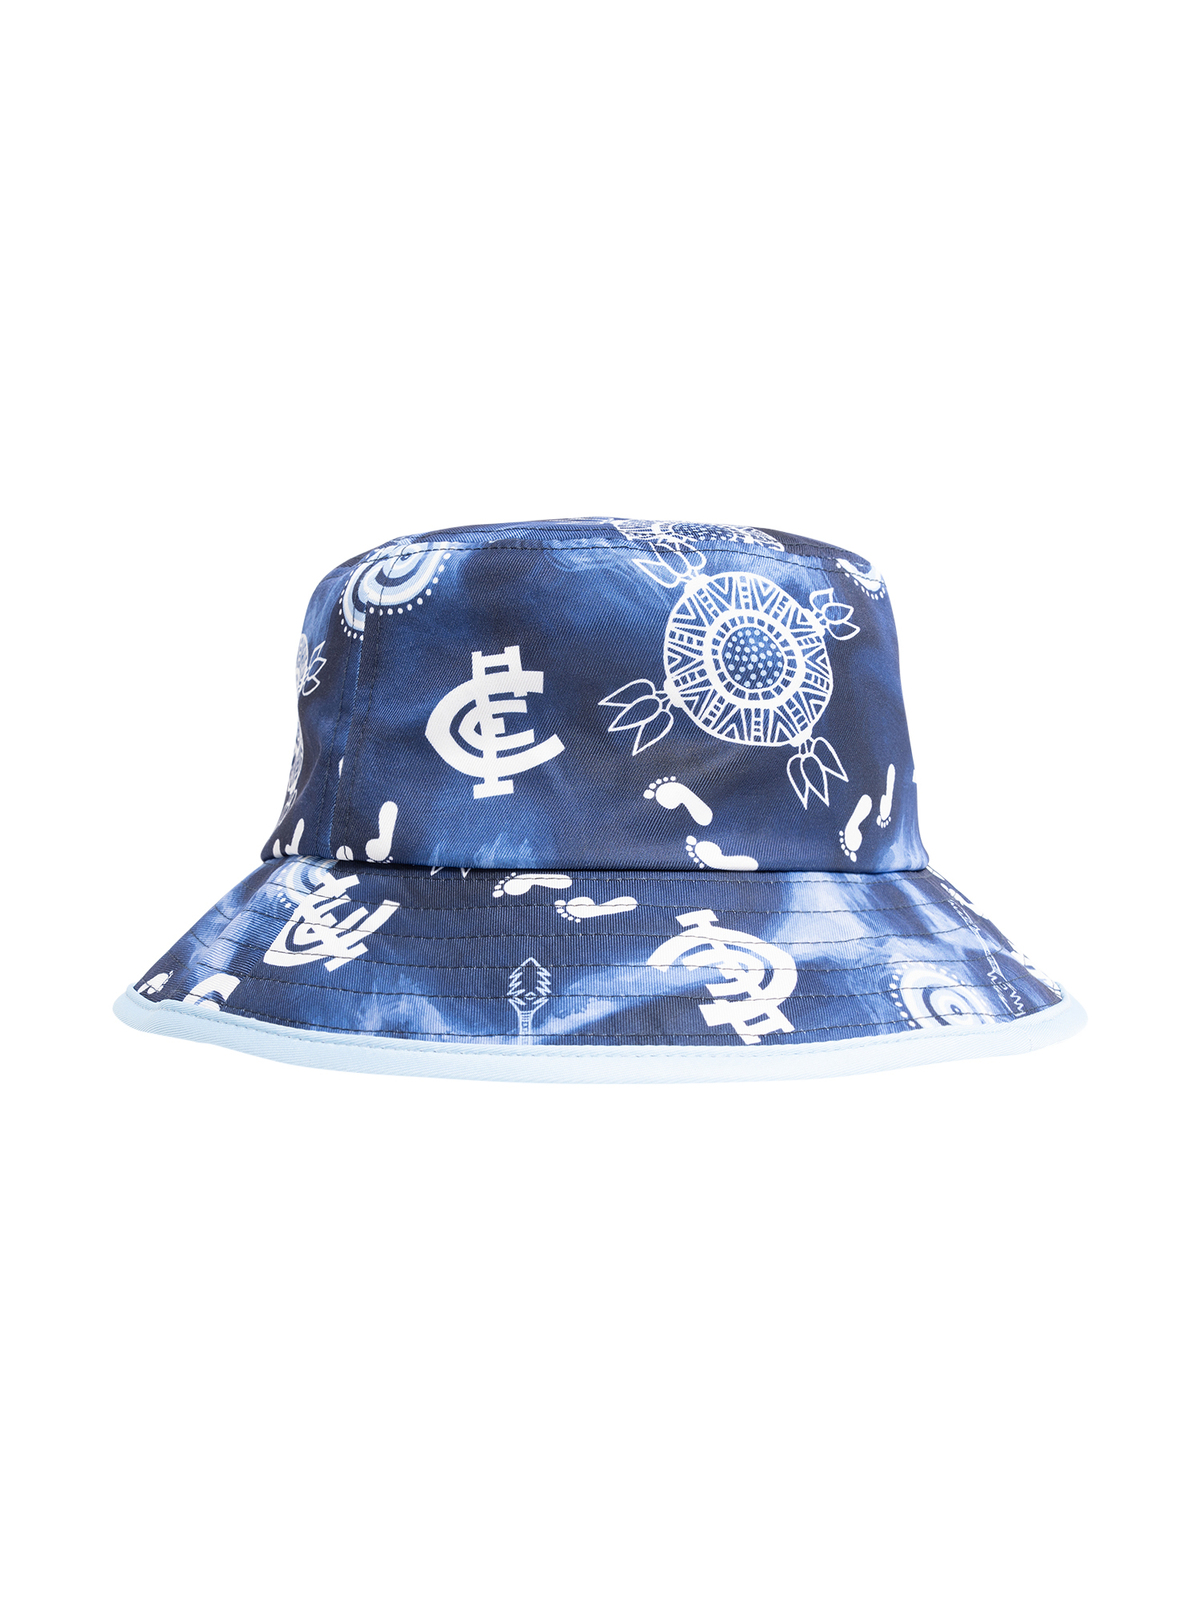 NSW Blues State of Origin 2023 Bucket Hat